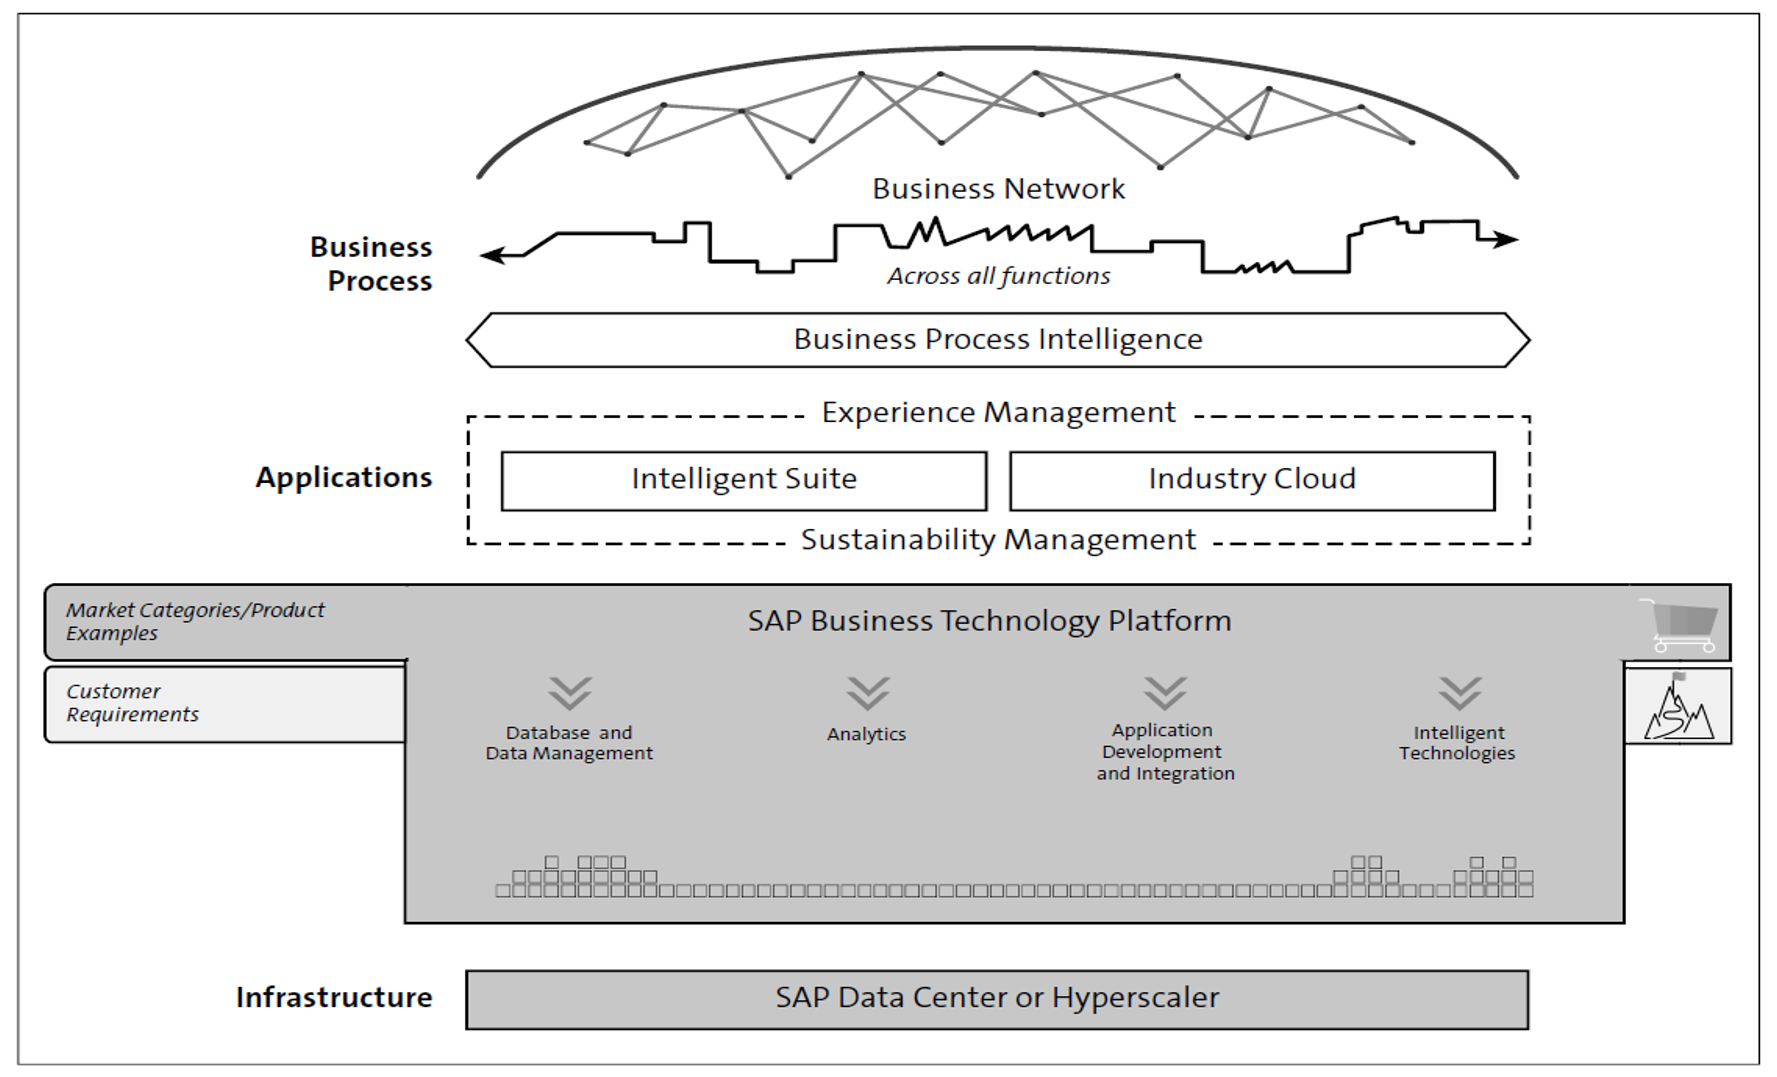 Four Technology Pillars of SAP BTP